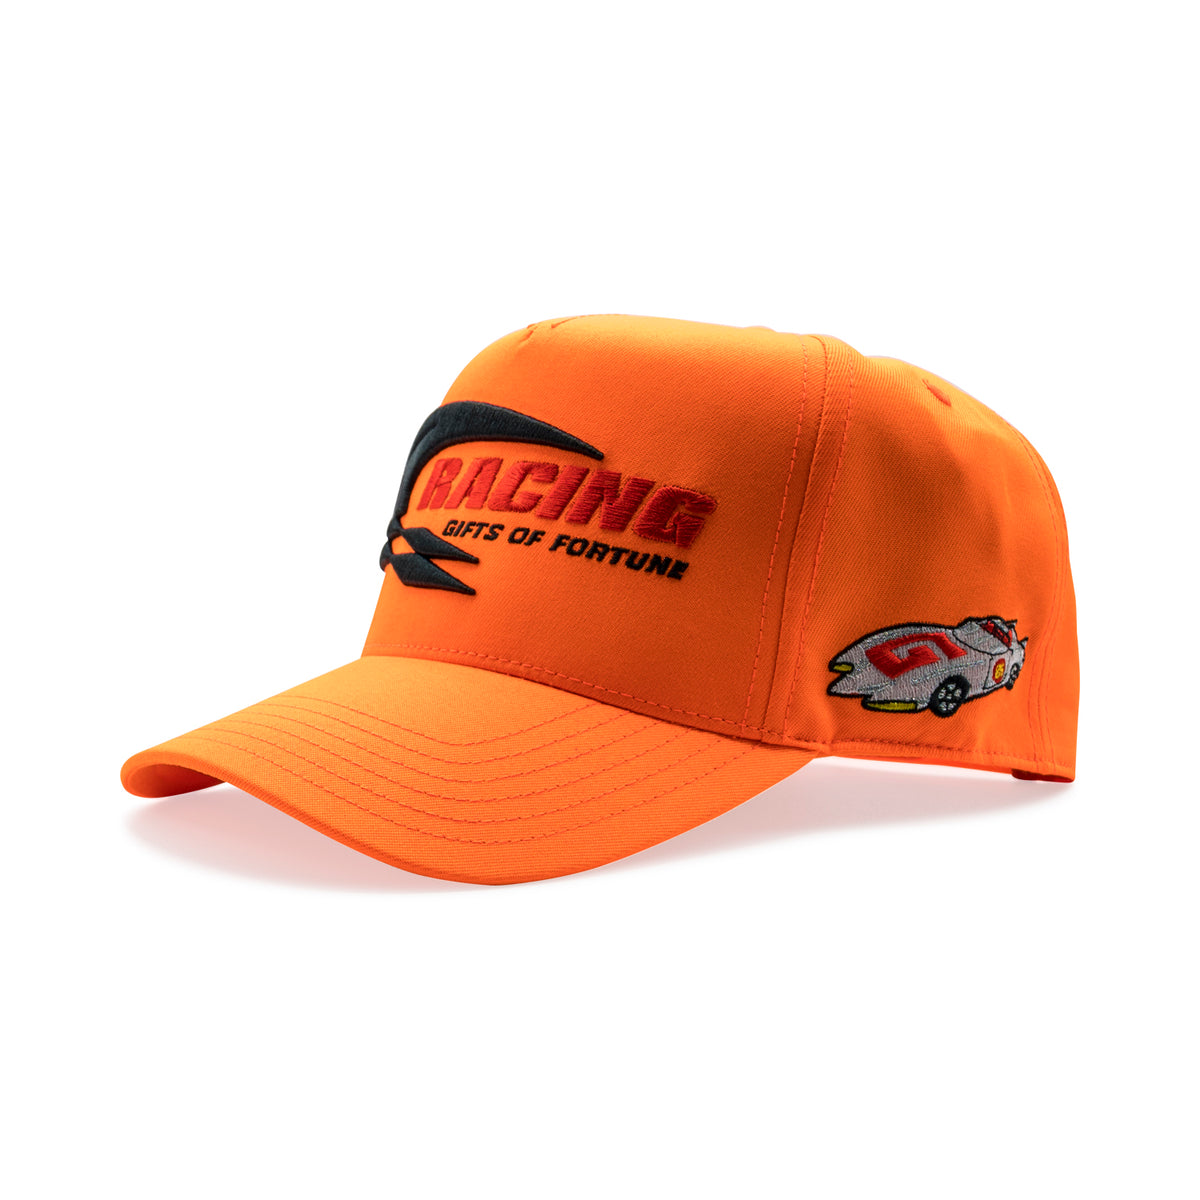 1 of 1 Speedway Trucker Hat| Neon Orange